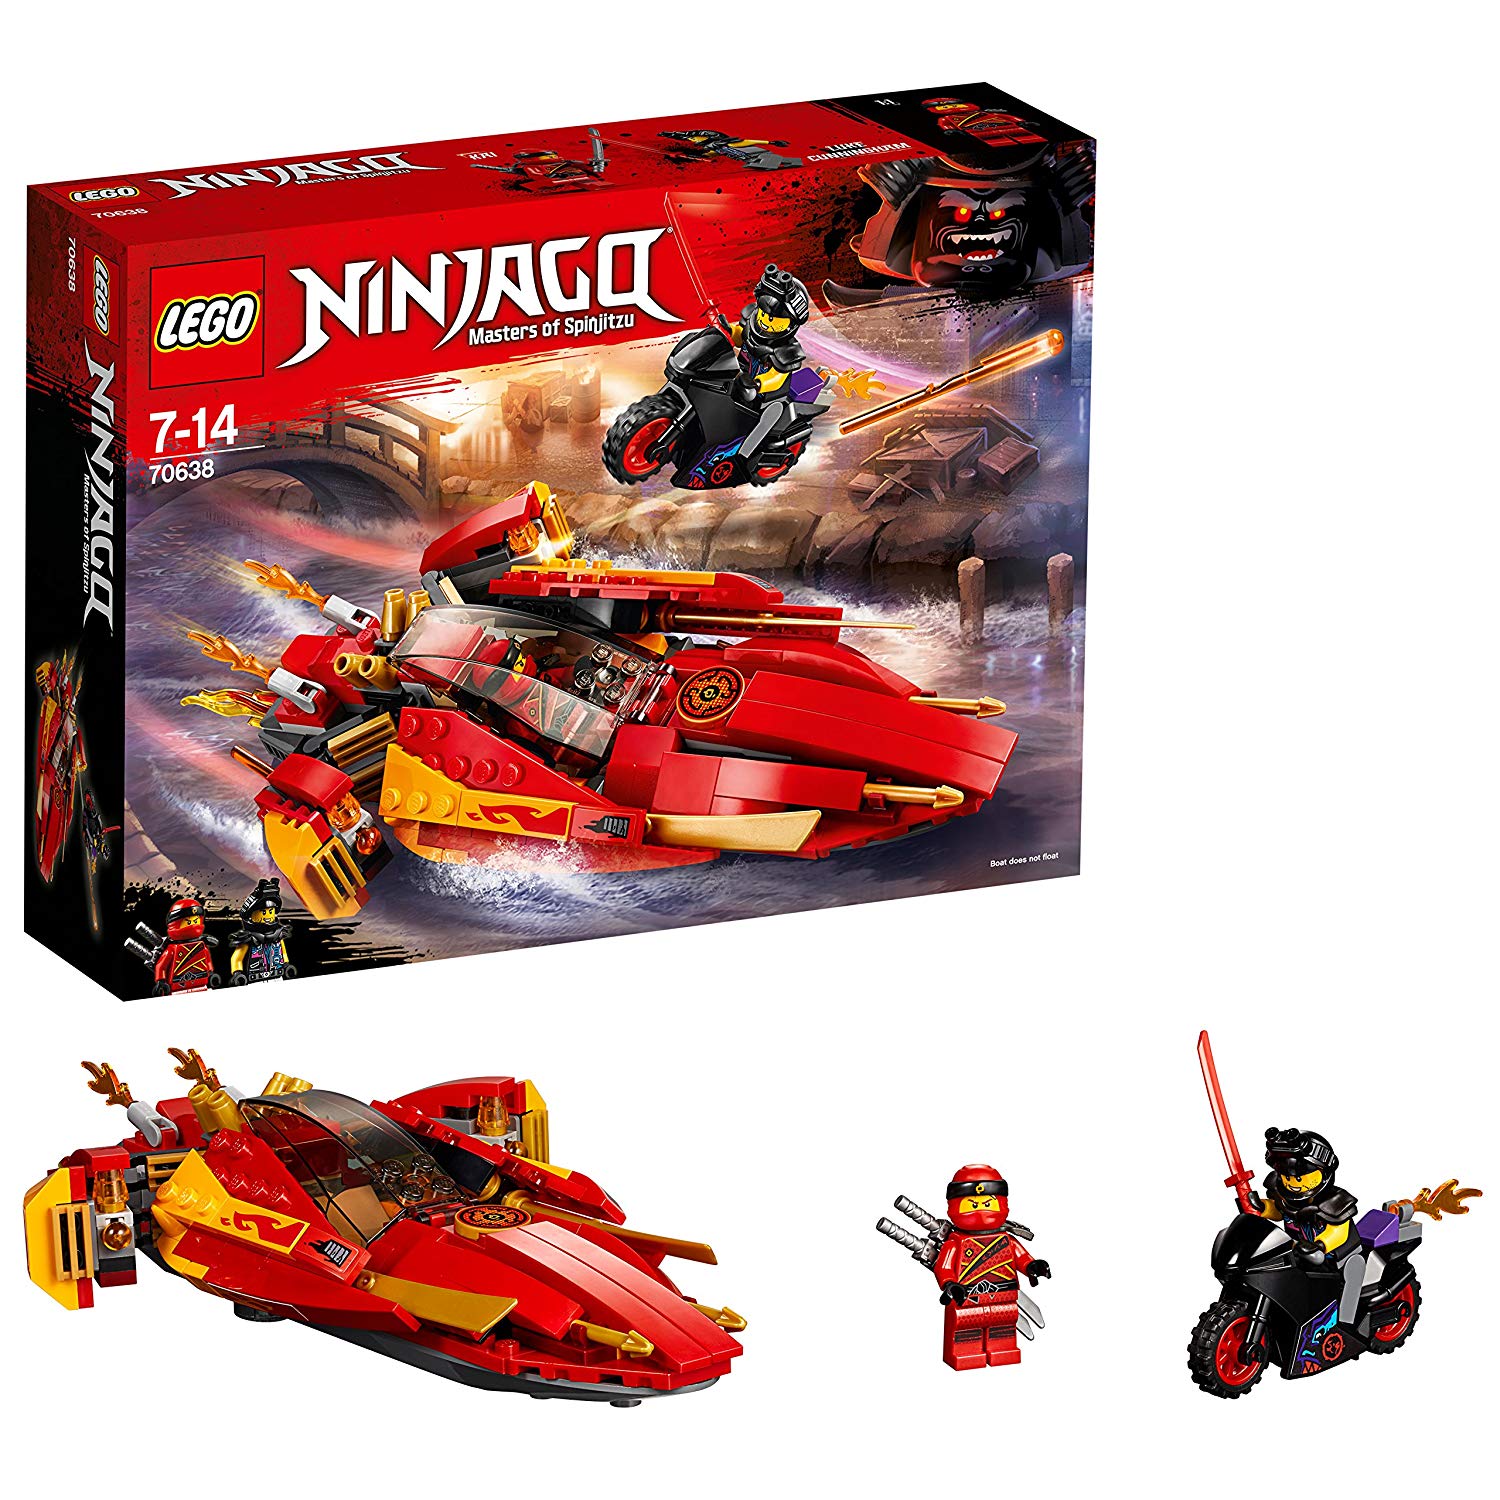 Lego Ninjago Cool Toy